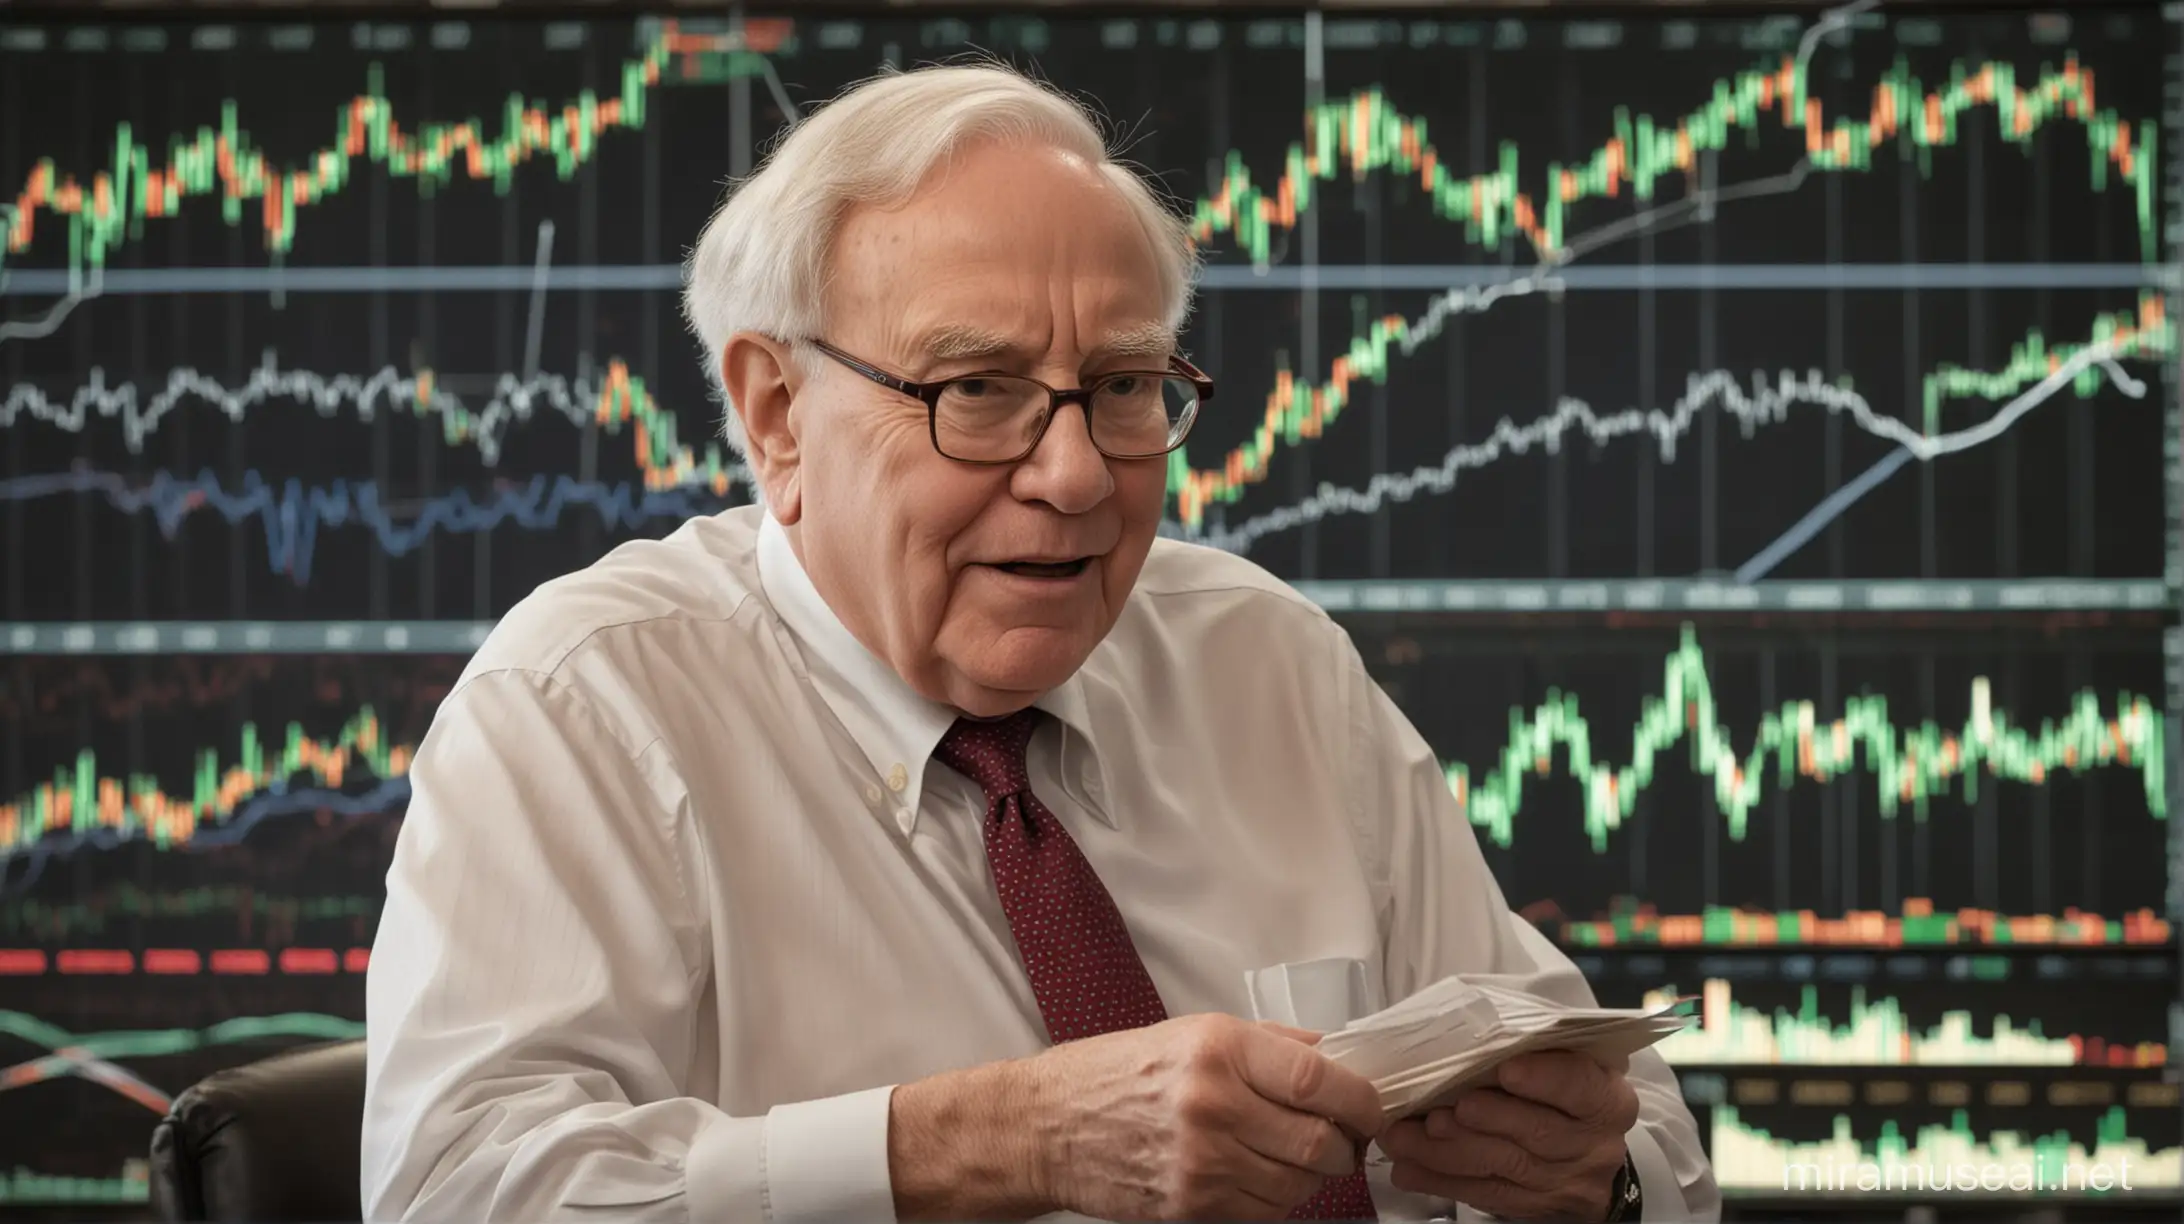 Warren Buffett buying a hidden stock and stock market graph in background.